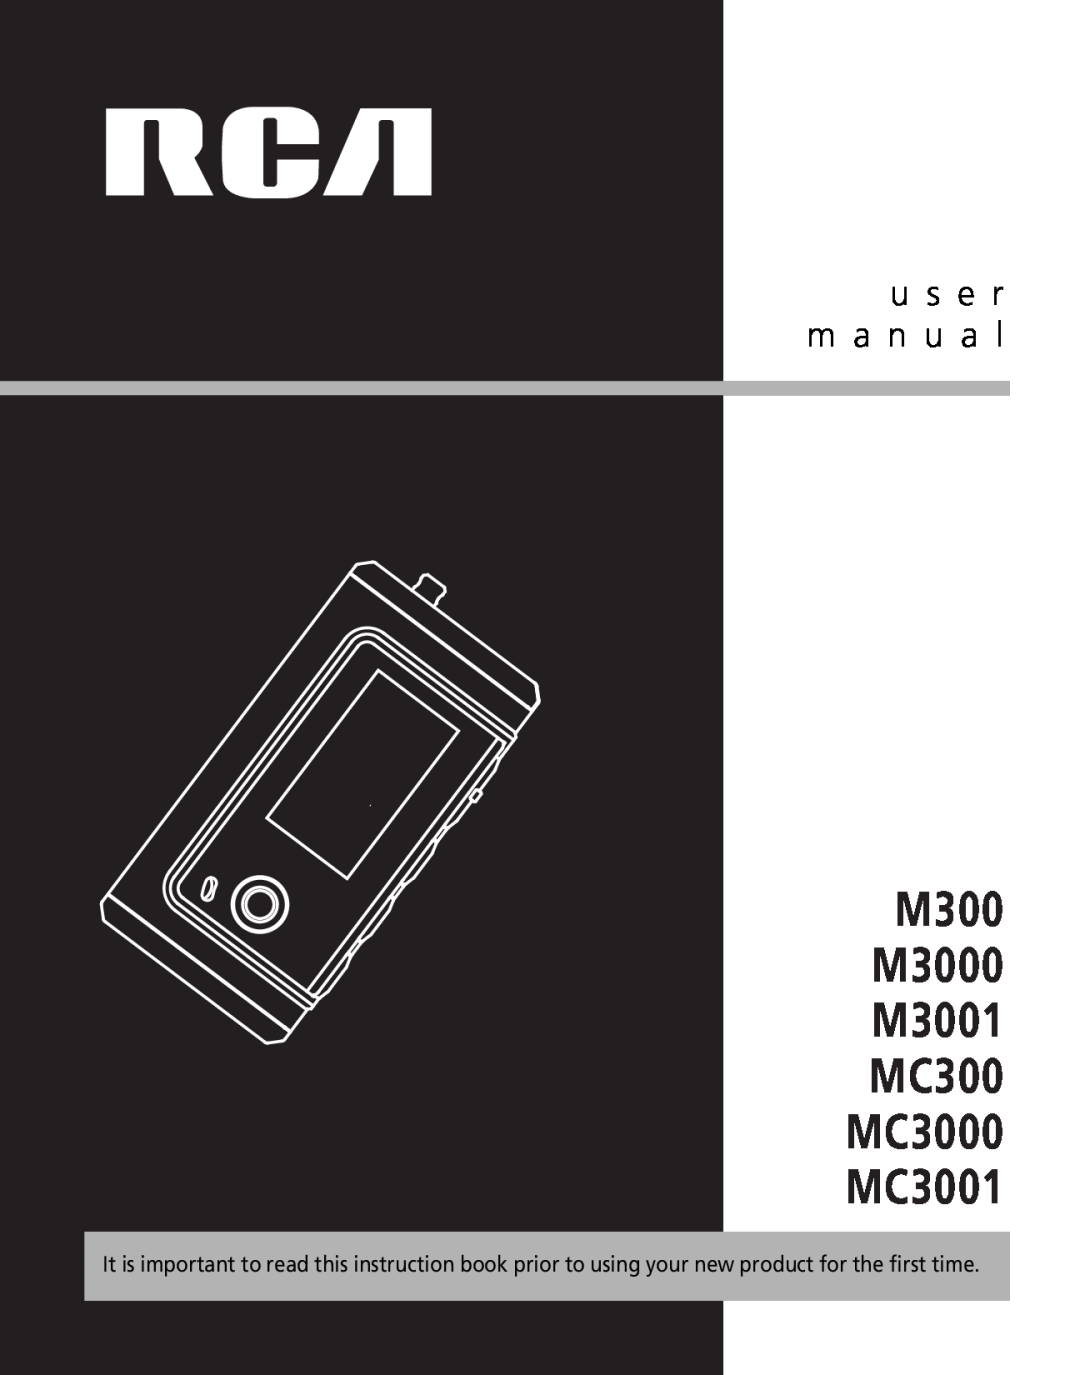 RCA user manual M300 M3000 M3001 MC300 MC3000 MC3001, u s e r m a n u a l 